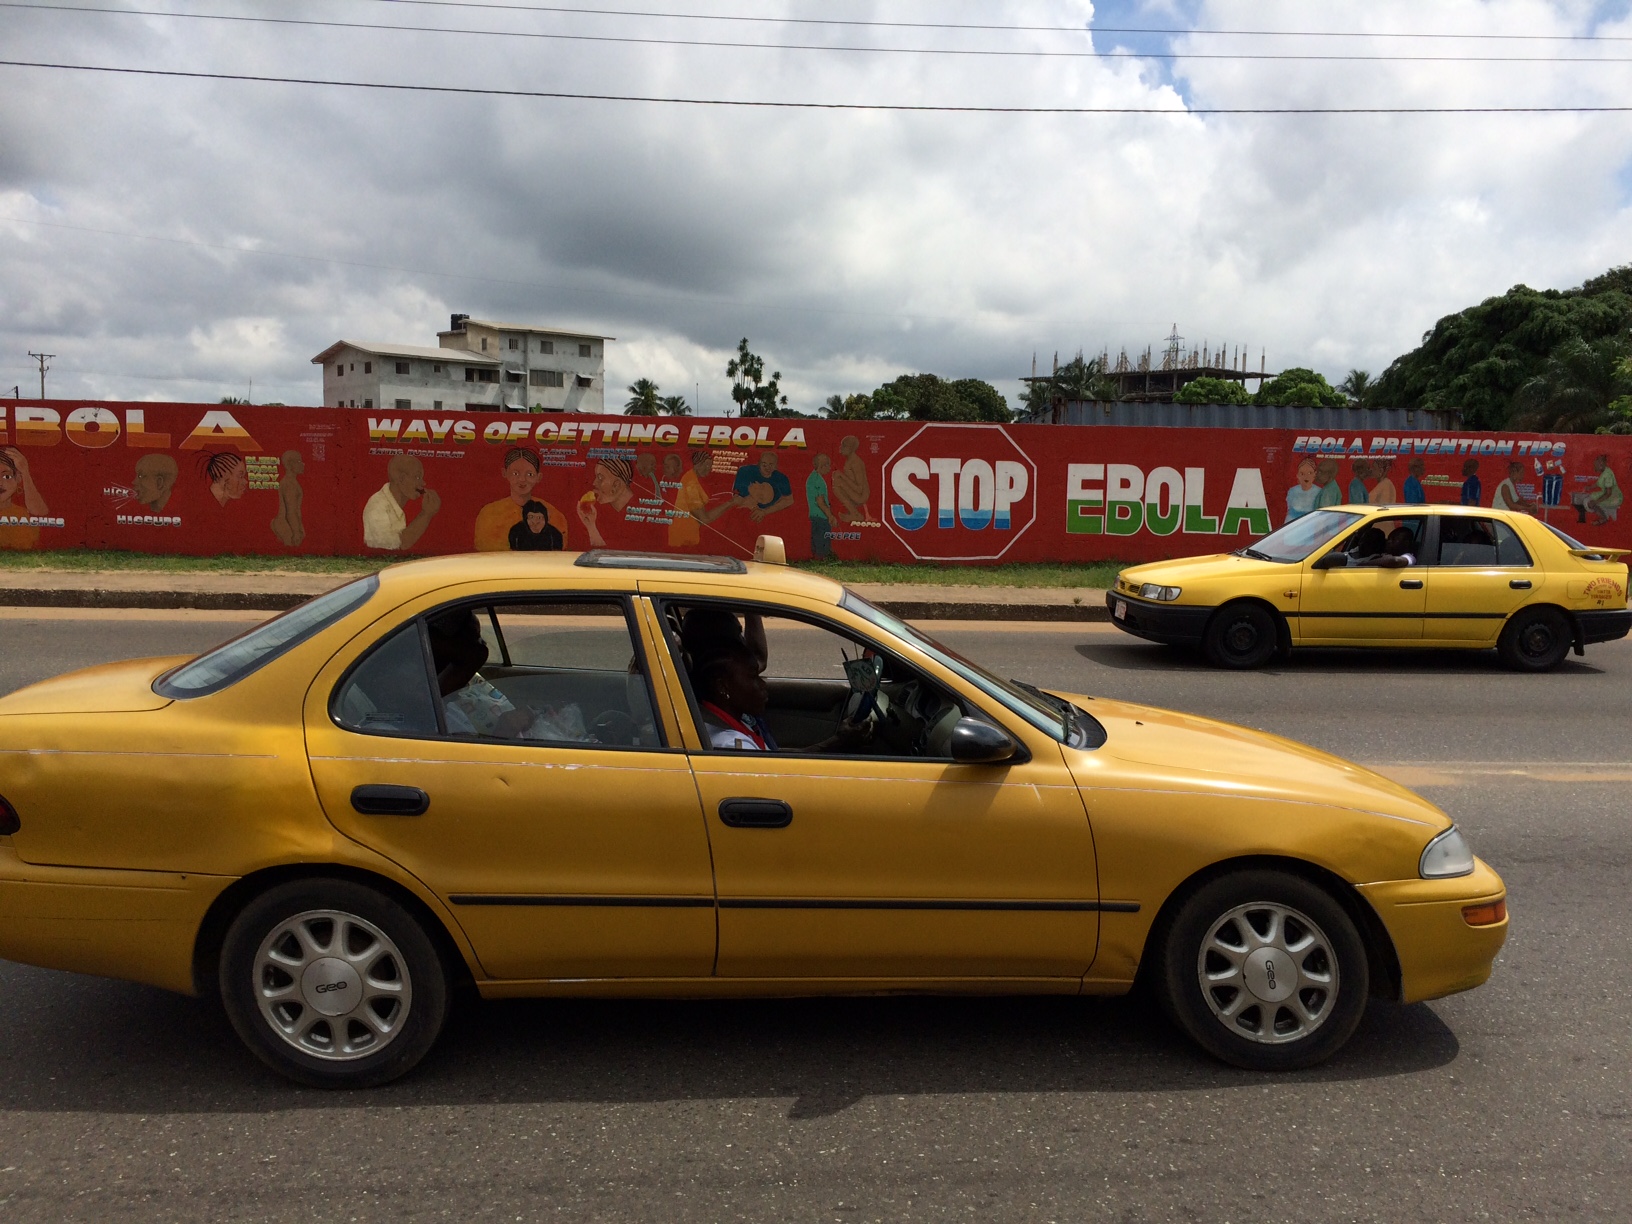 ebola sign & taxis